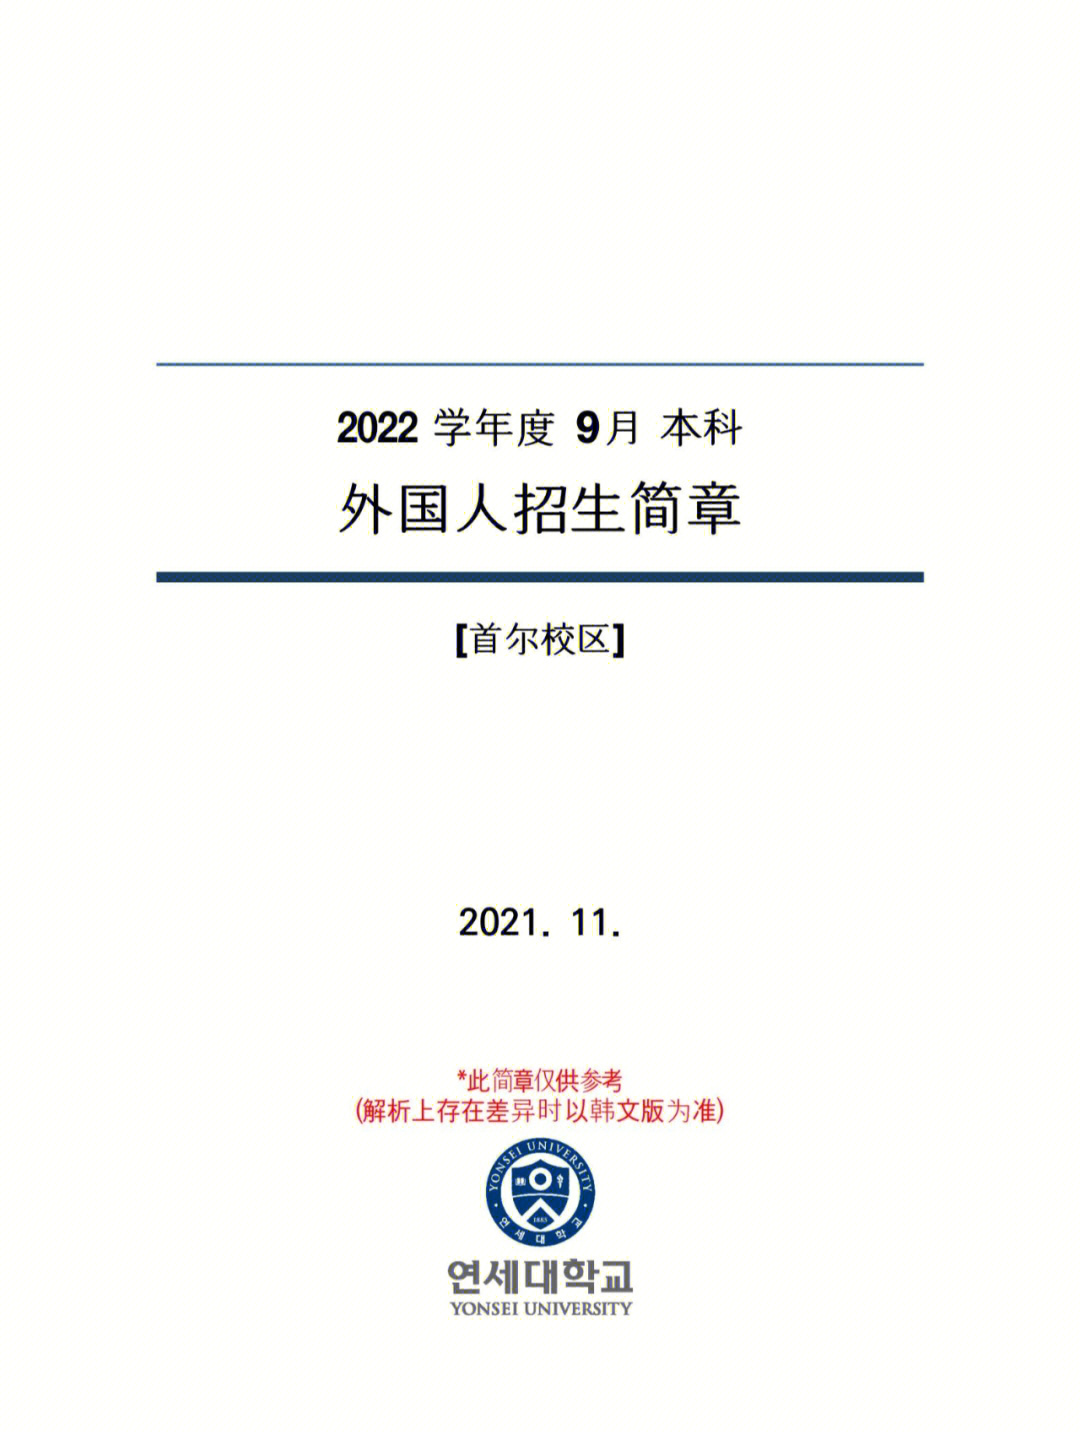 20229韩国延世大学本科招生简章中文